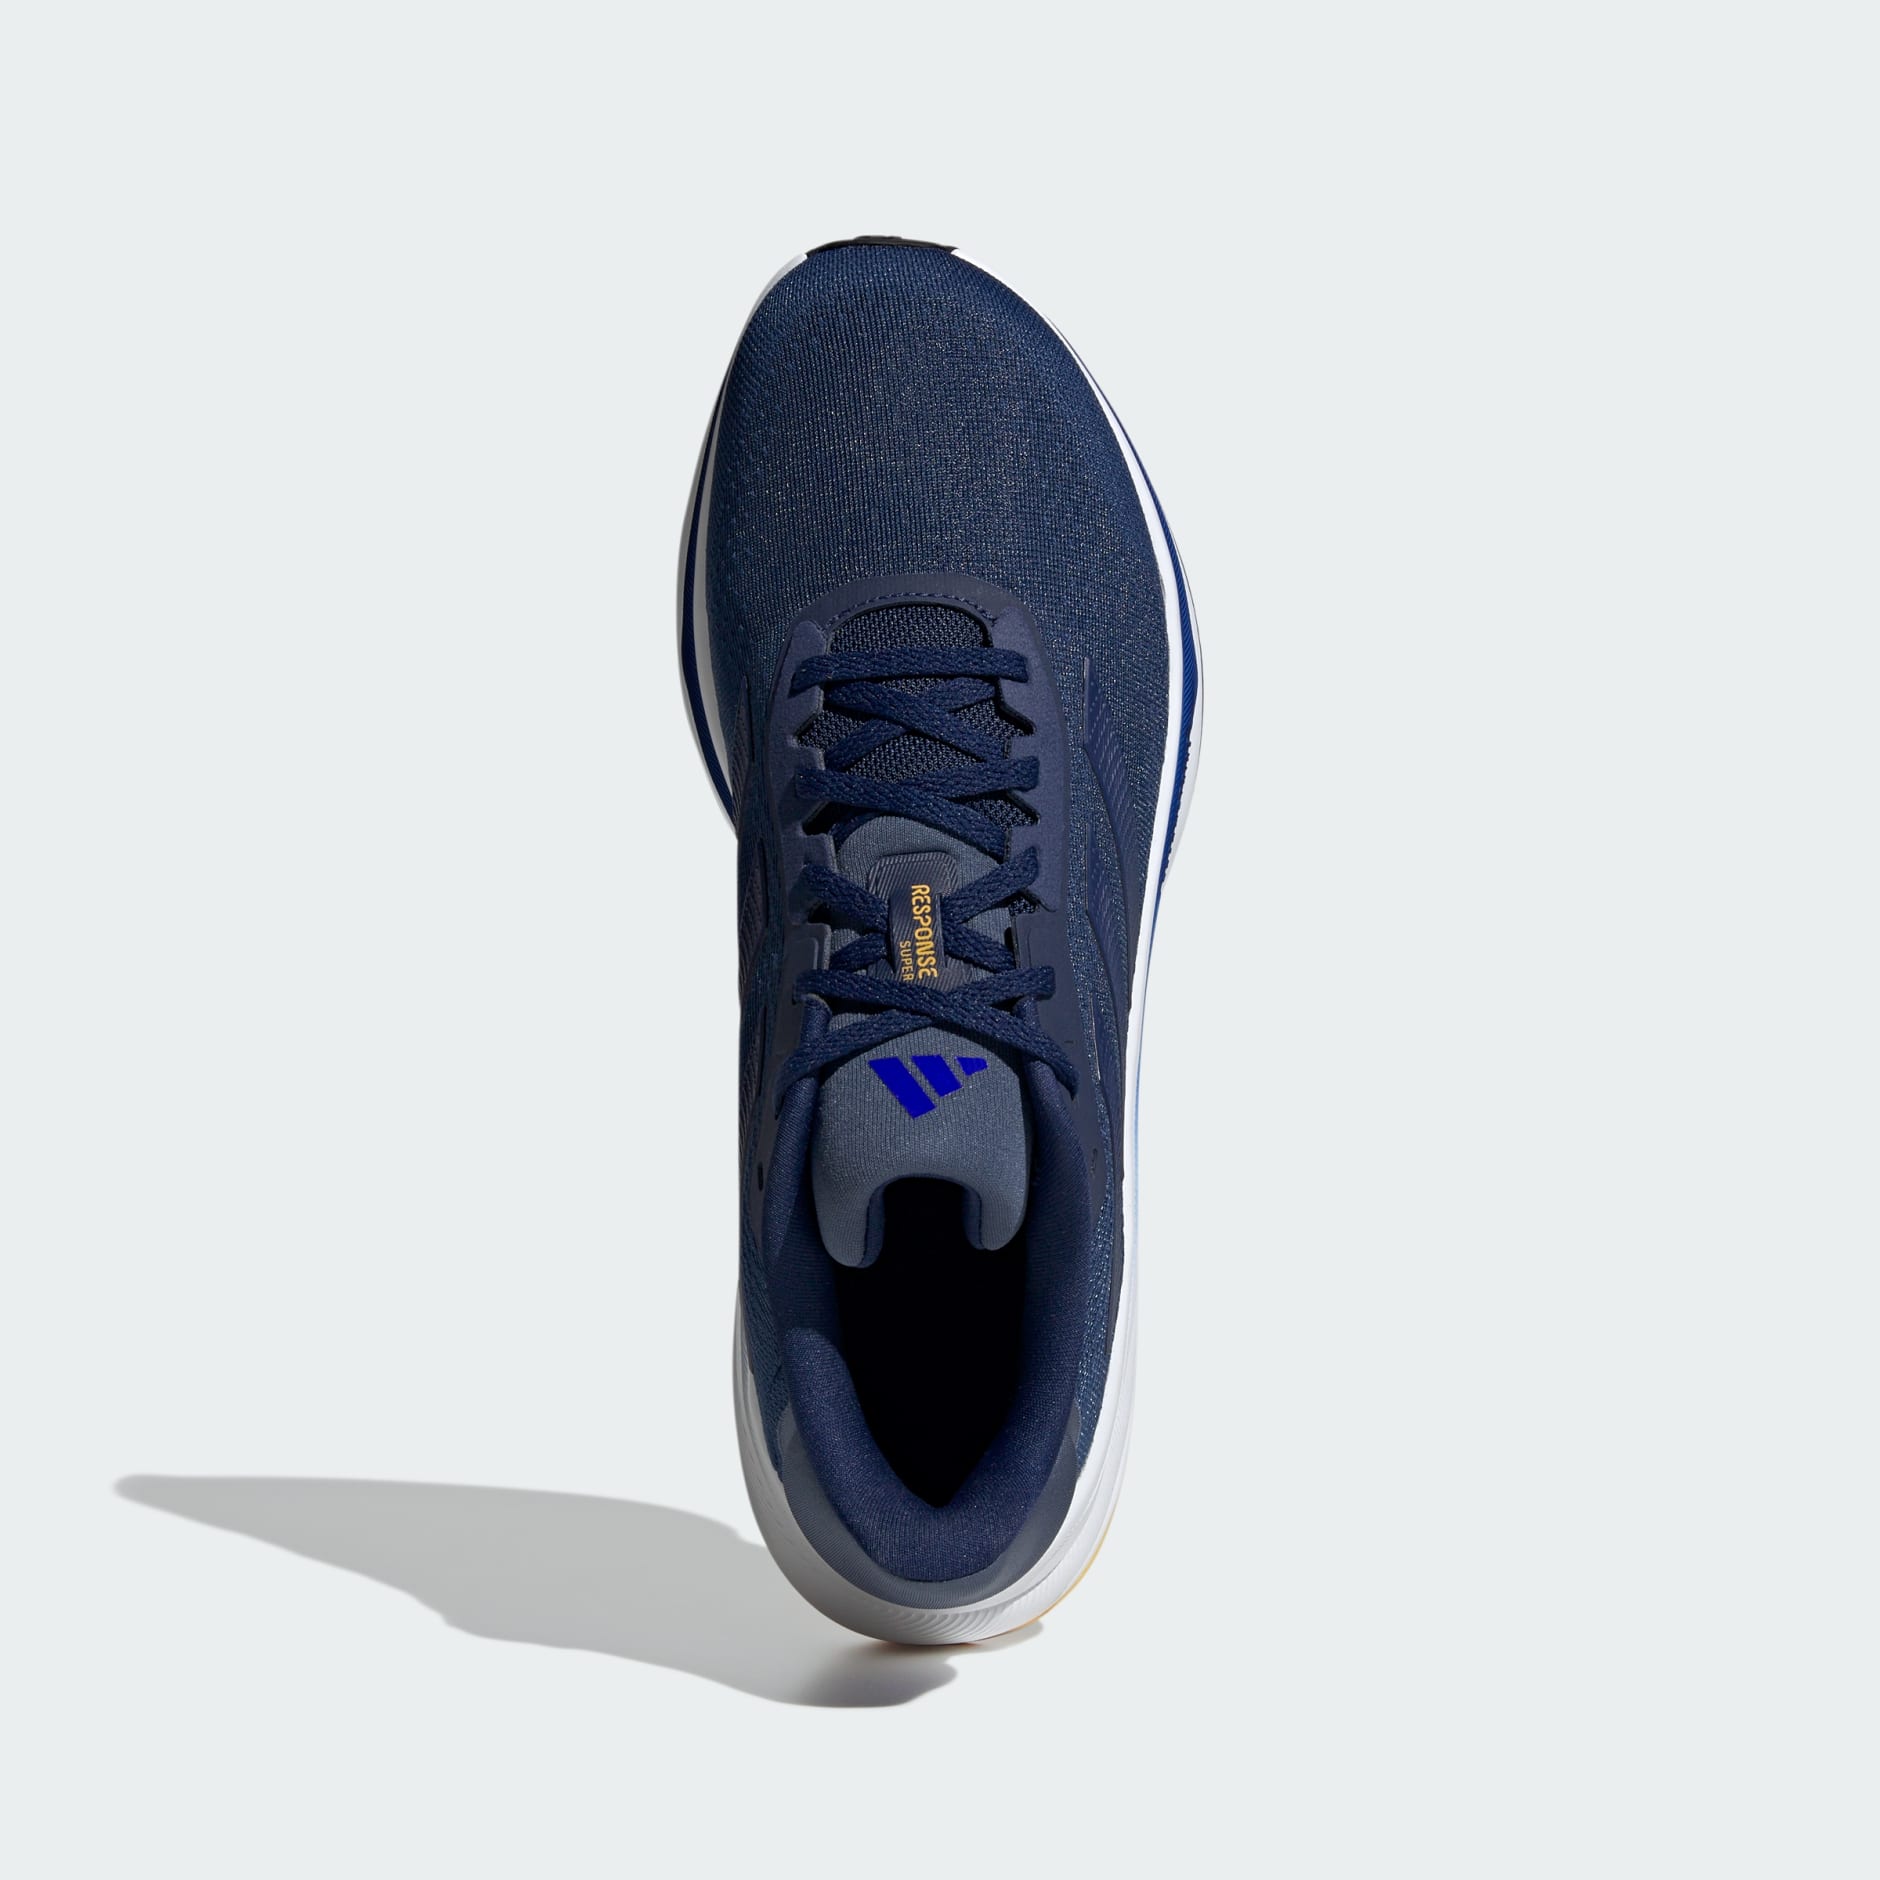 ADIDAS ORIGINALS Torsion Super Shoes | Navy blue Men's Sneakers | YOOX